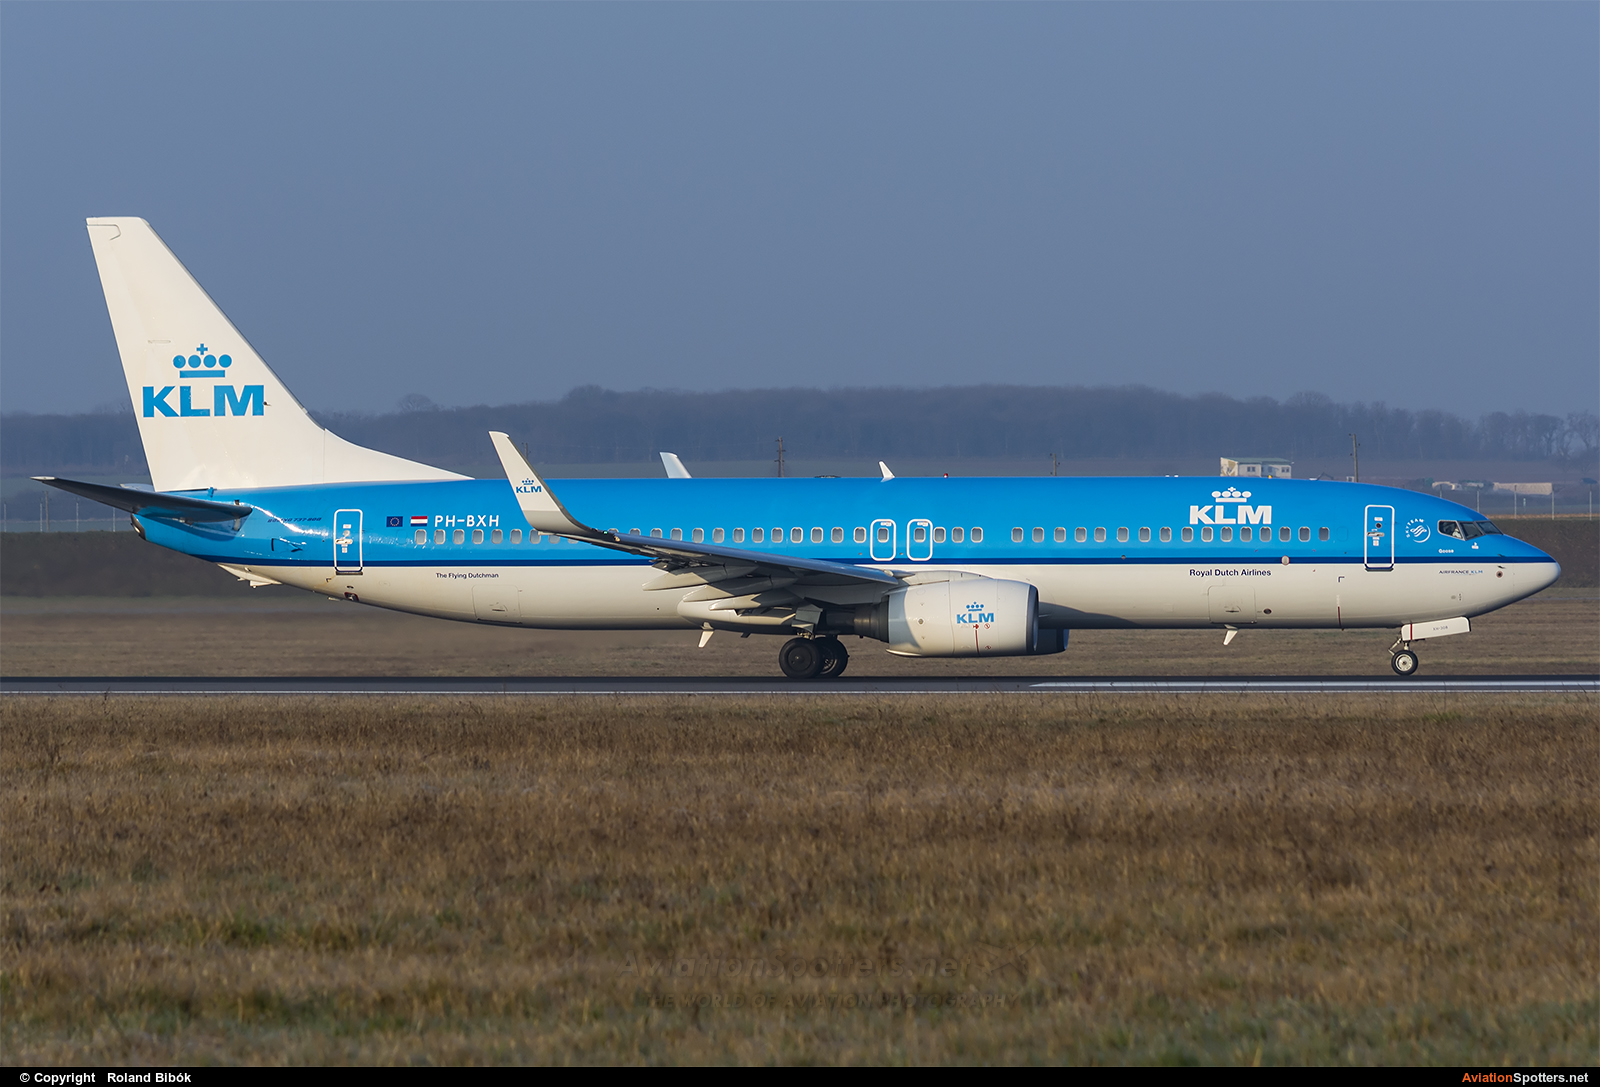 KLM  -  737-800  (PH-BXH) By Roland Bibók (Roland Bibok)